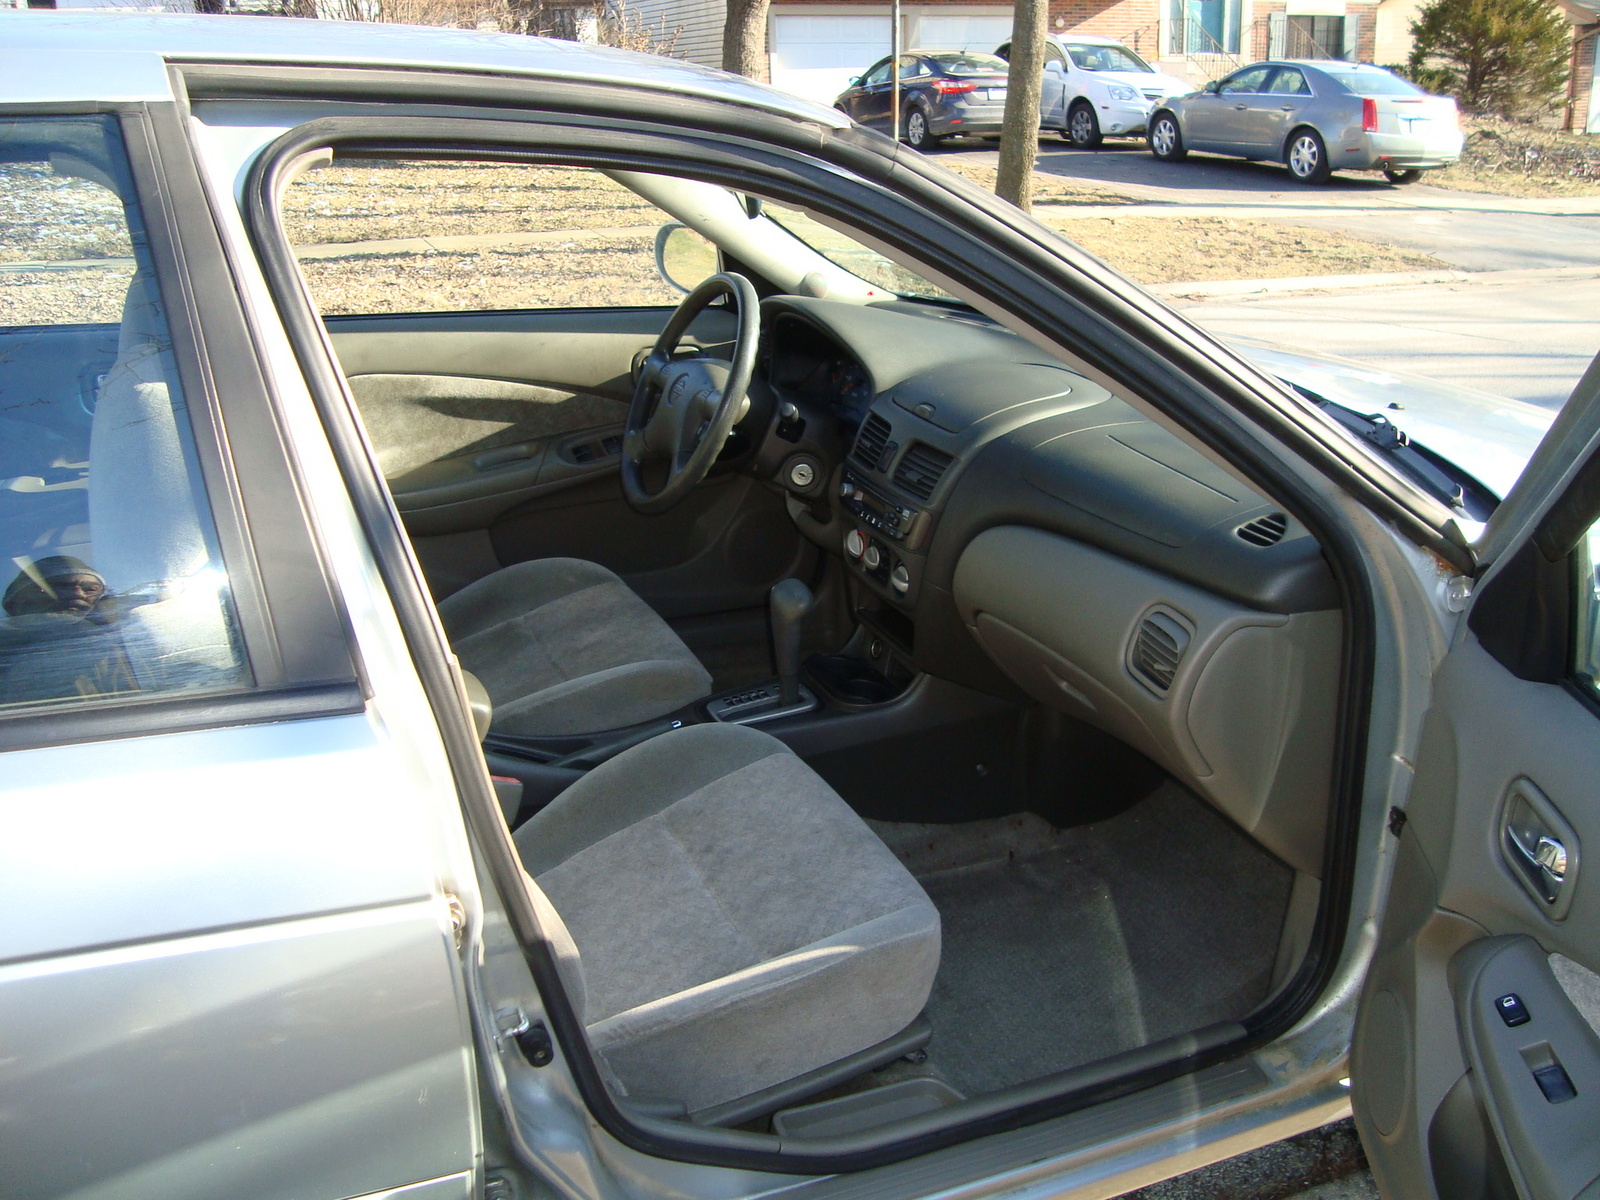 2002 sentra interior driver's doors